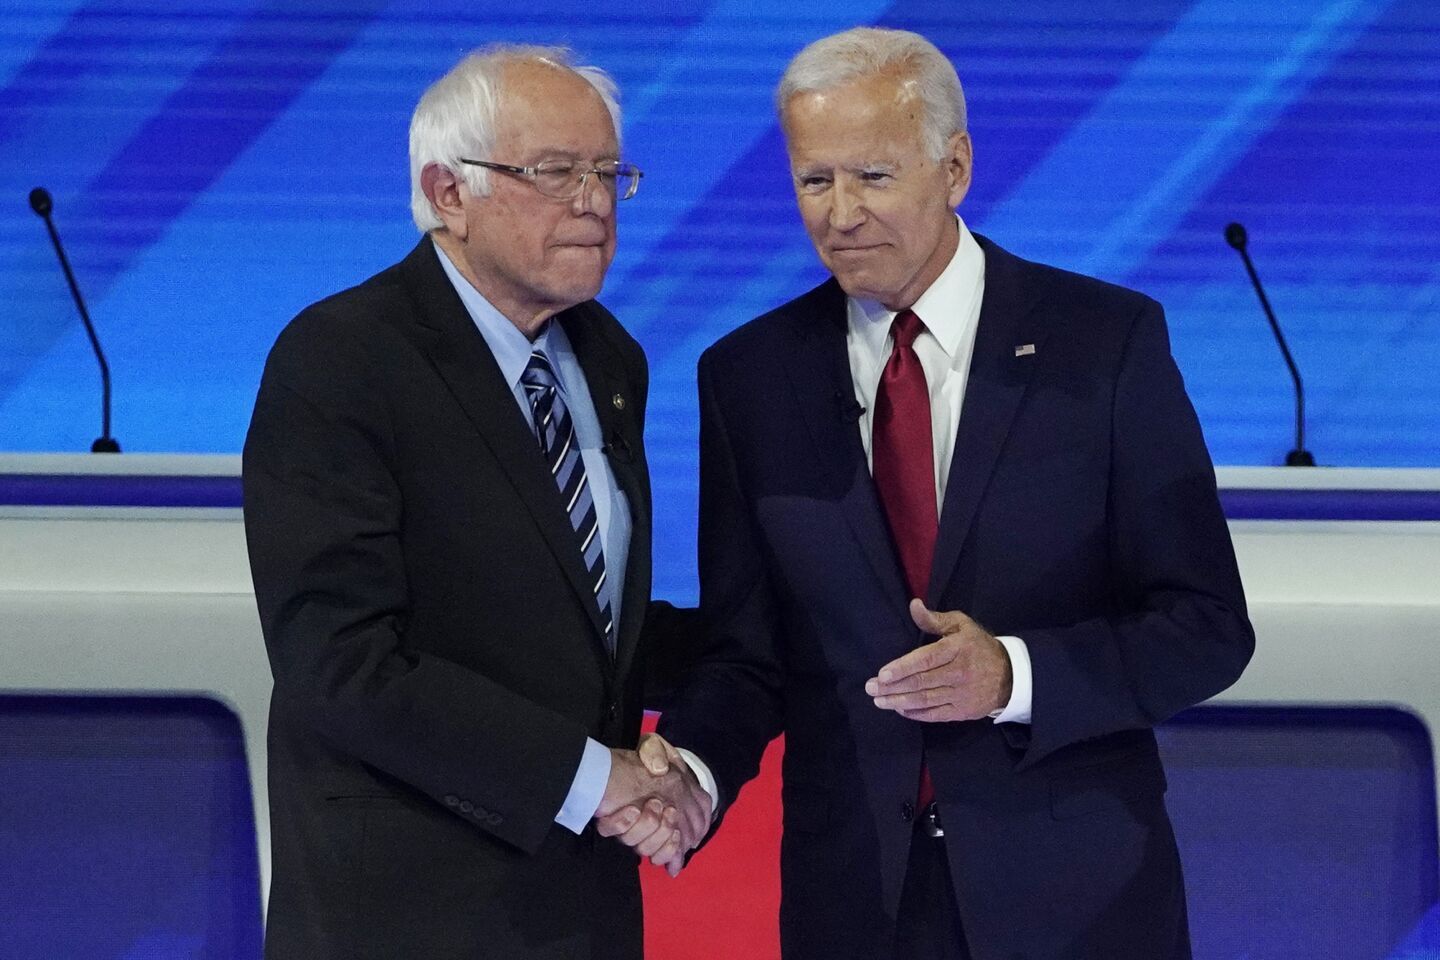 Bernie Sanders and Joe Biden before the debate.